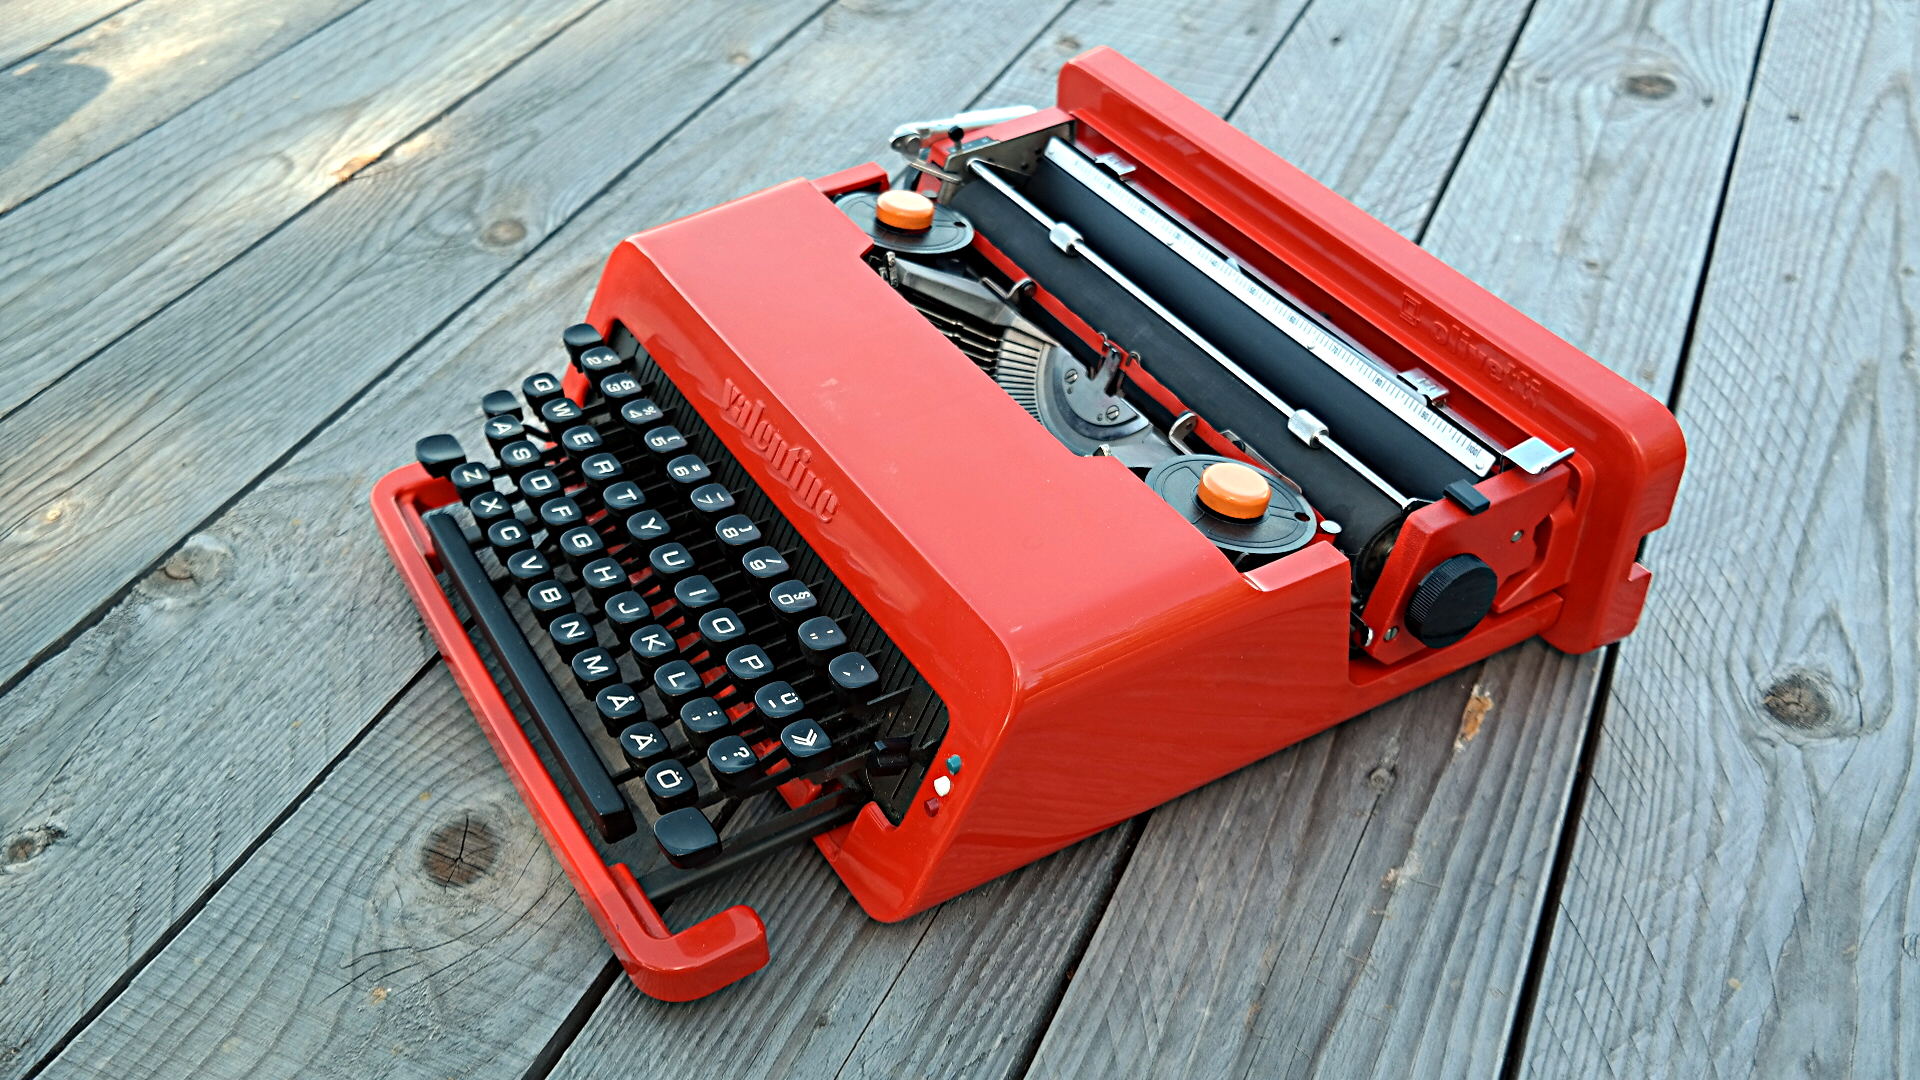 にその olivetti タイプライター スペイン製 rINc7-m71770856437 